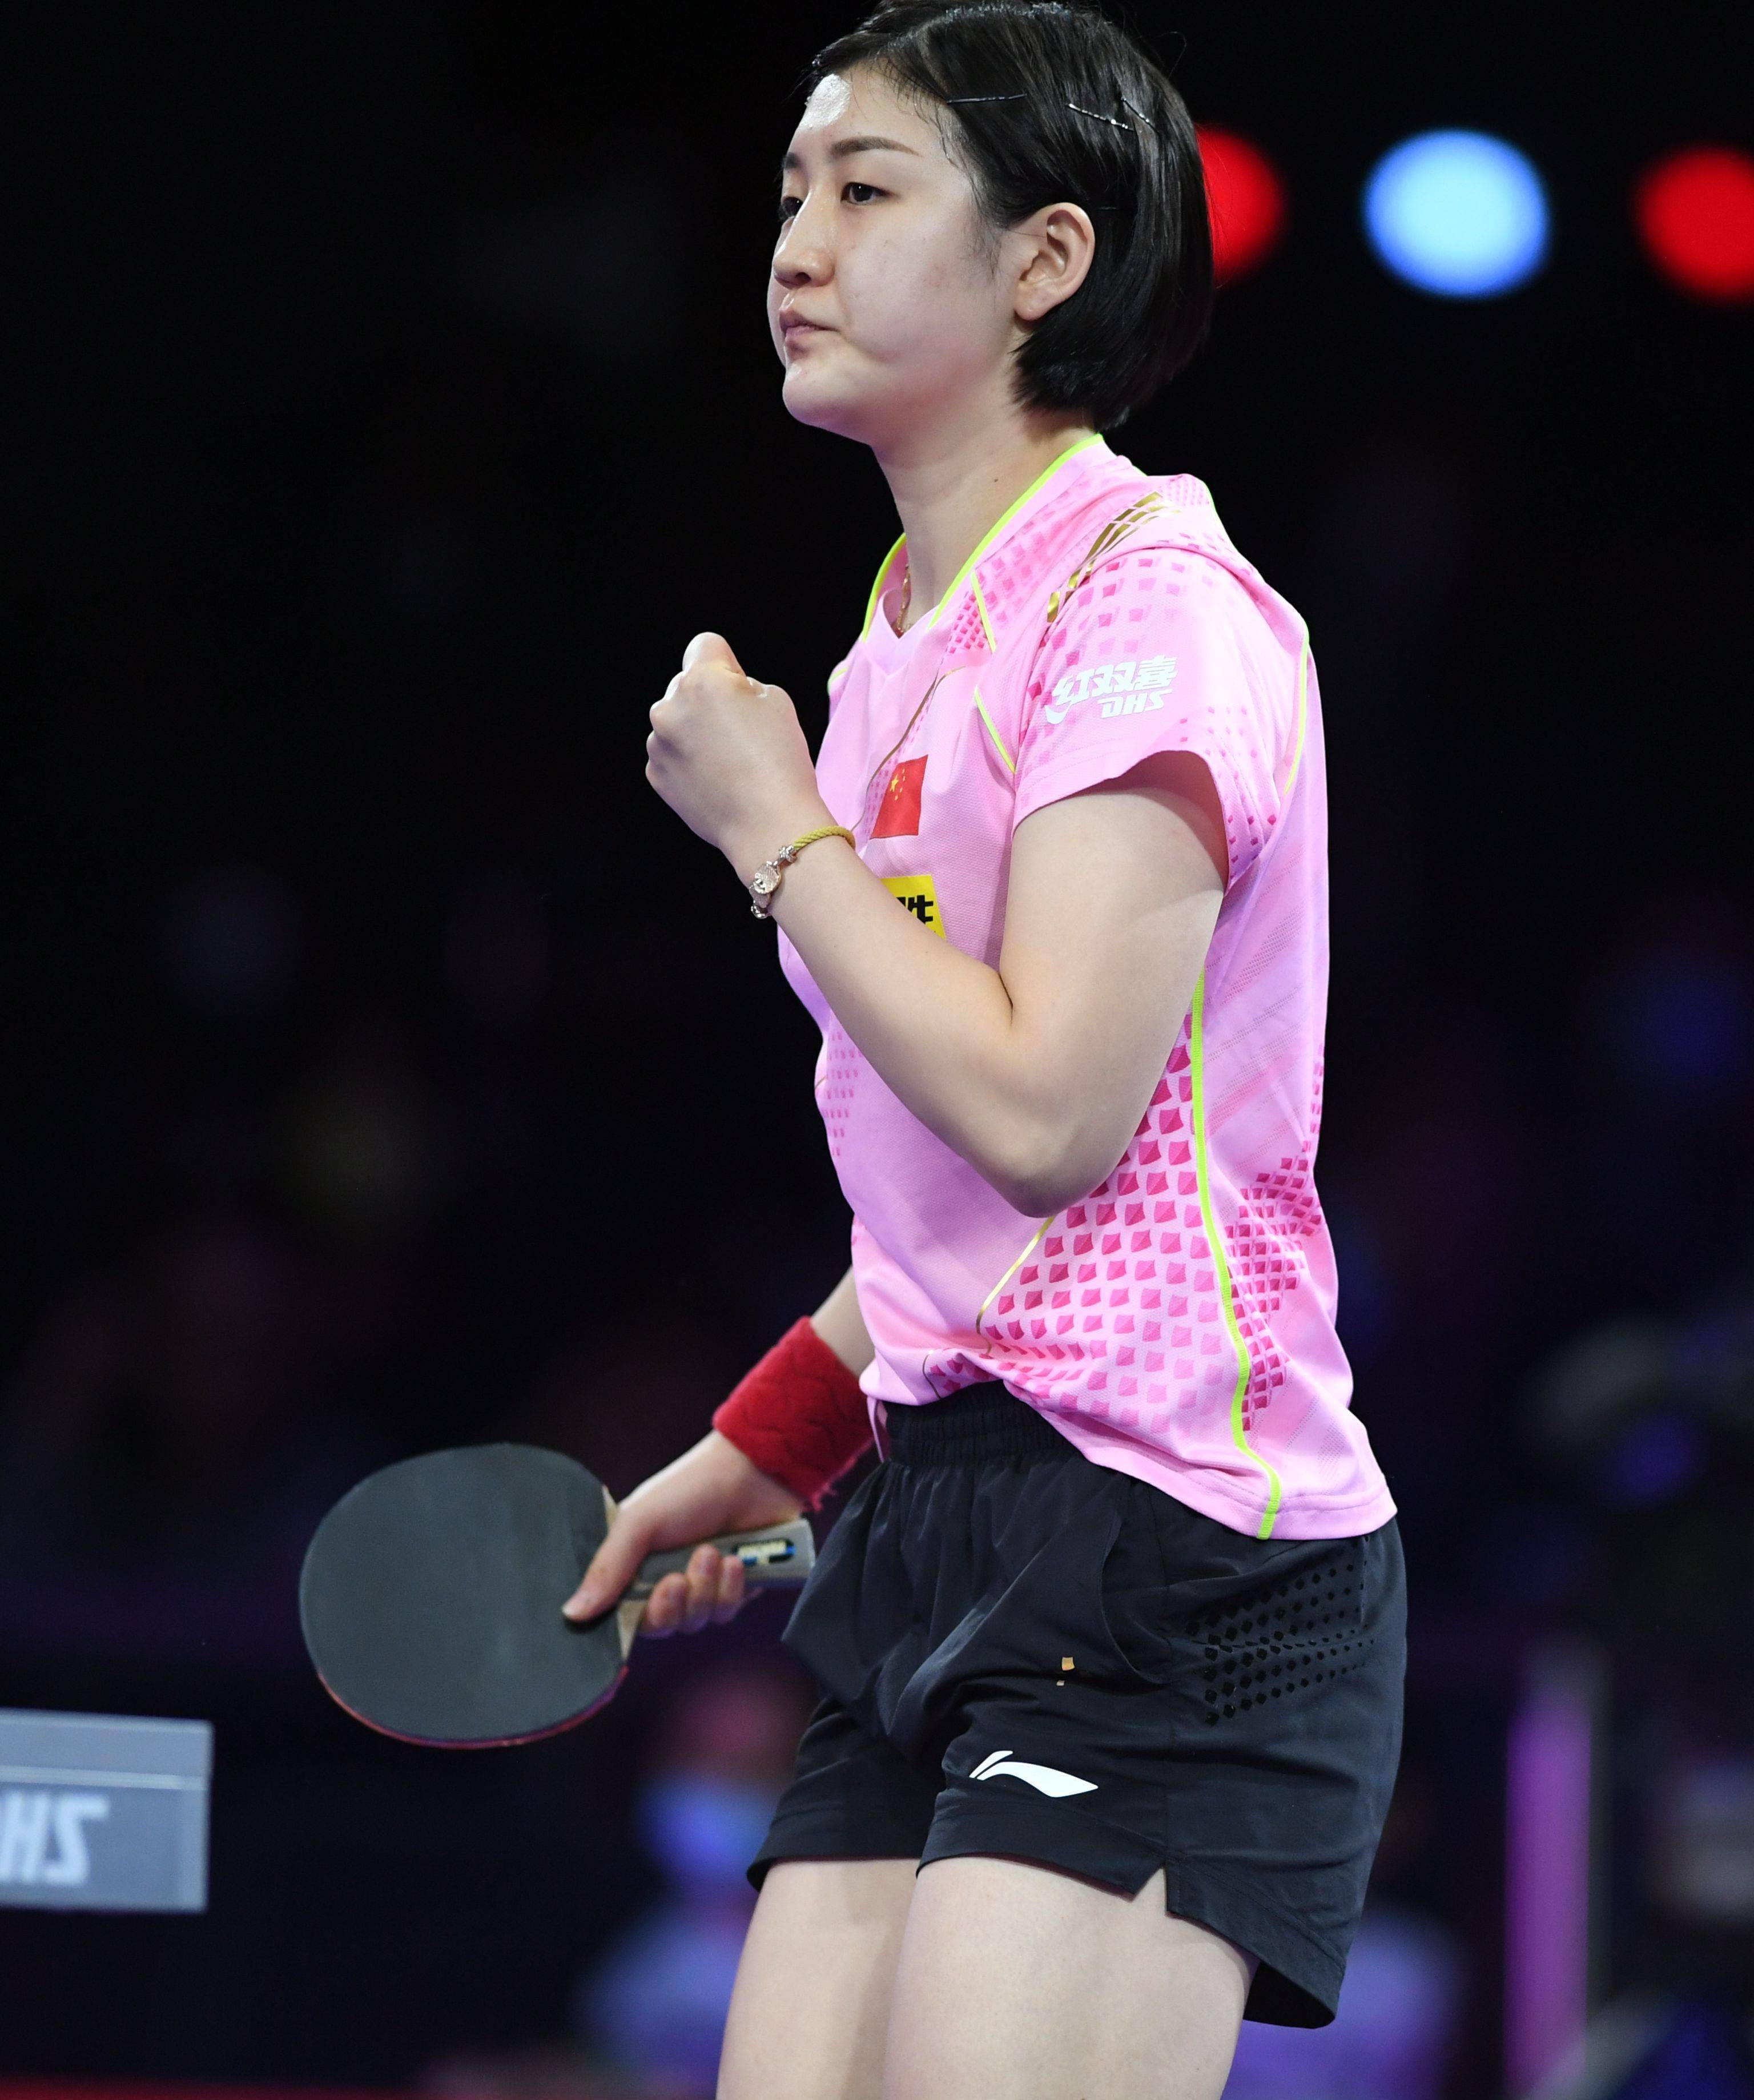 乒乓球锦标赛女单第四轮比赛中,中国选手陈梦以4比3战胜日本选手平野